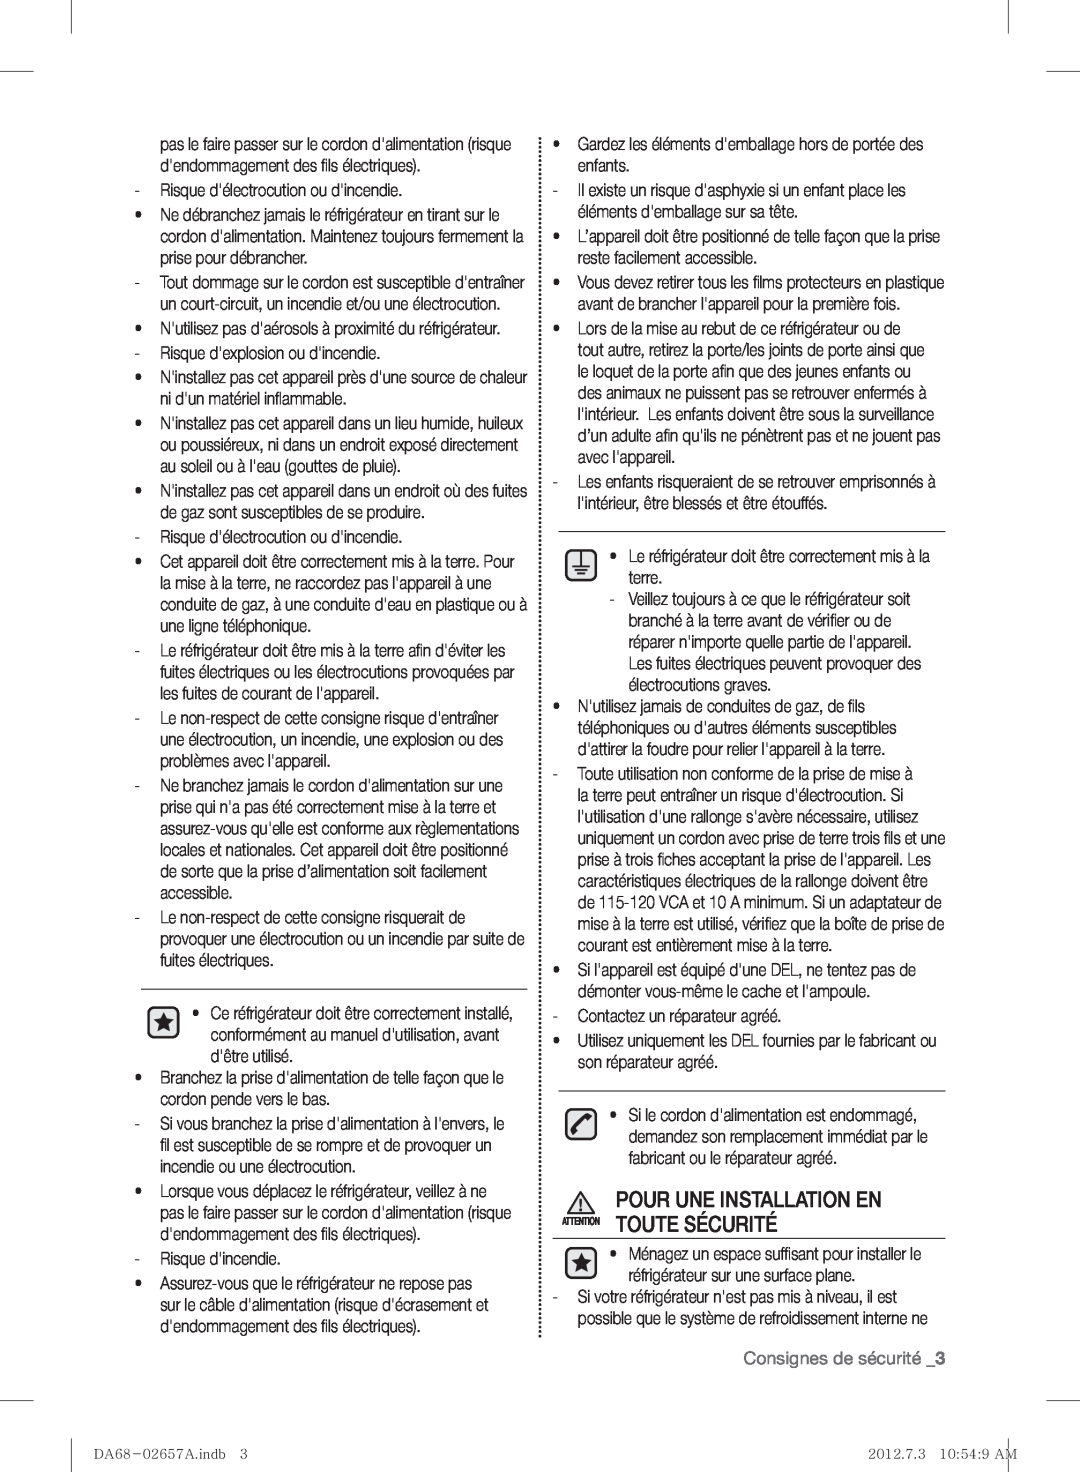 Samsung RF221NCTABC user manual Pour Une Installation En Attention Toute Sécurité, Consignes de sécurité 